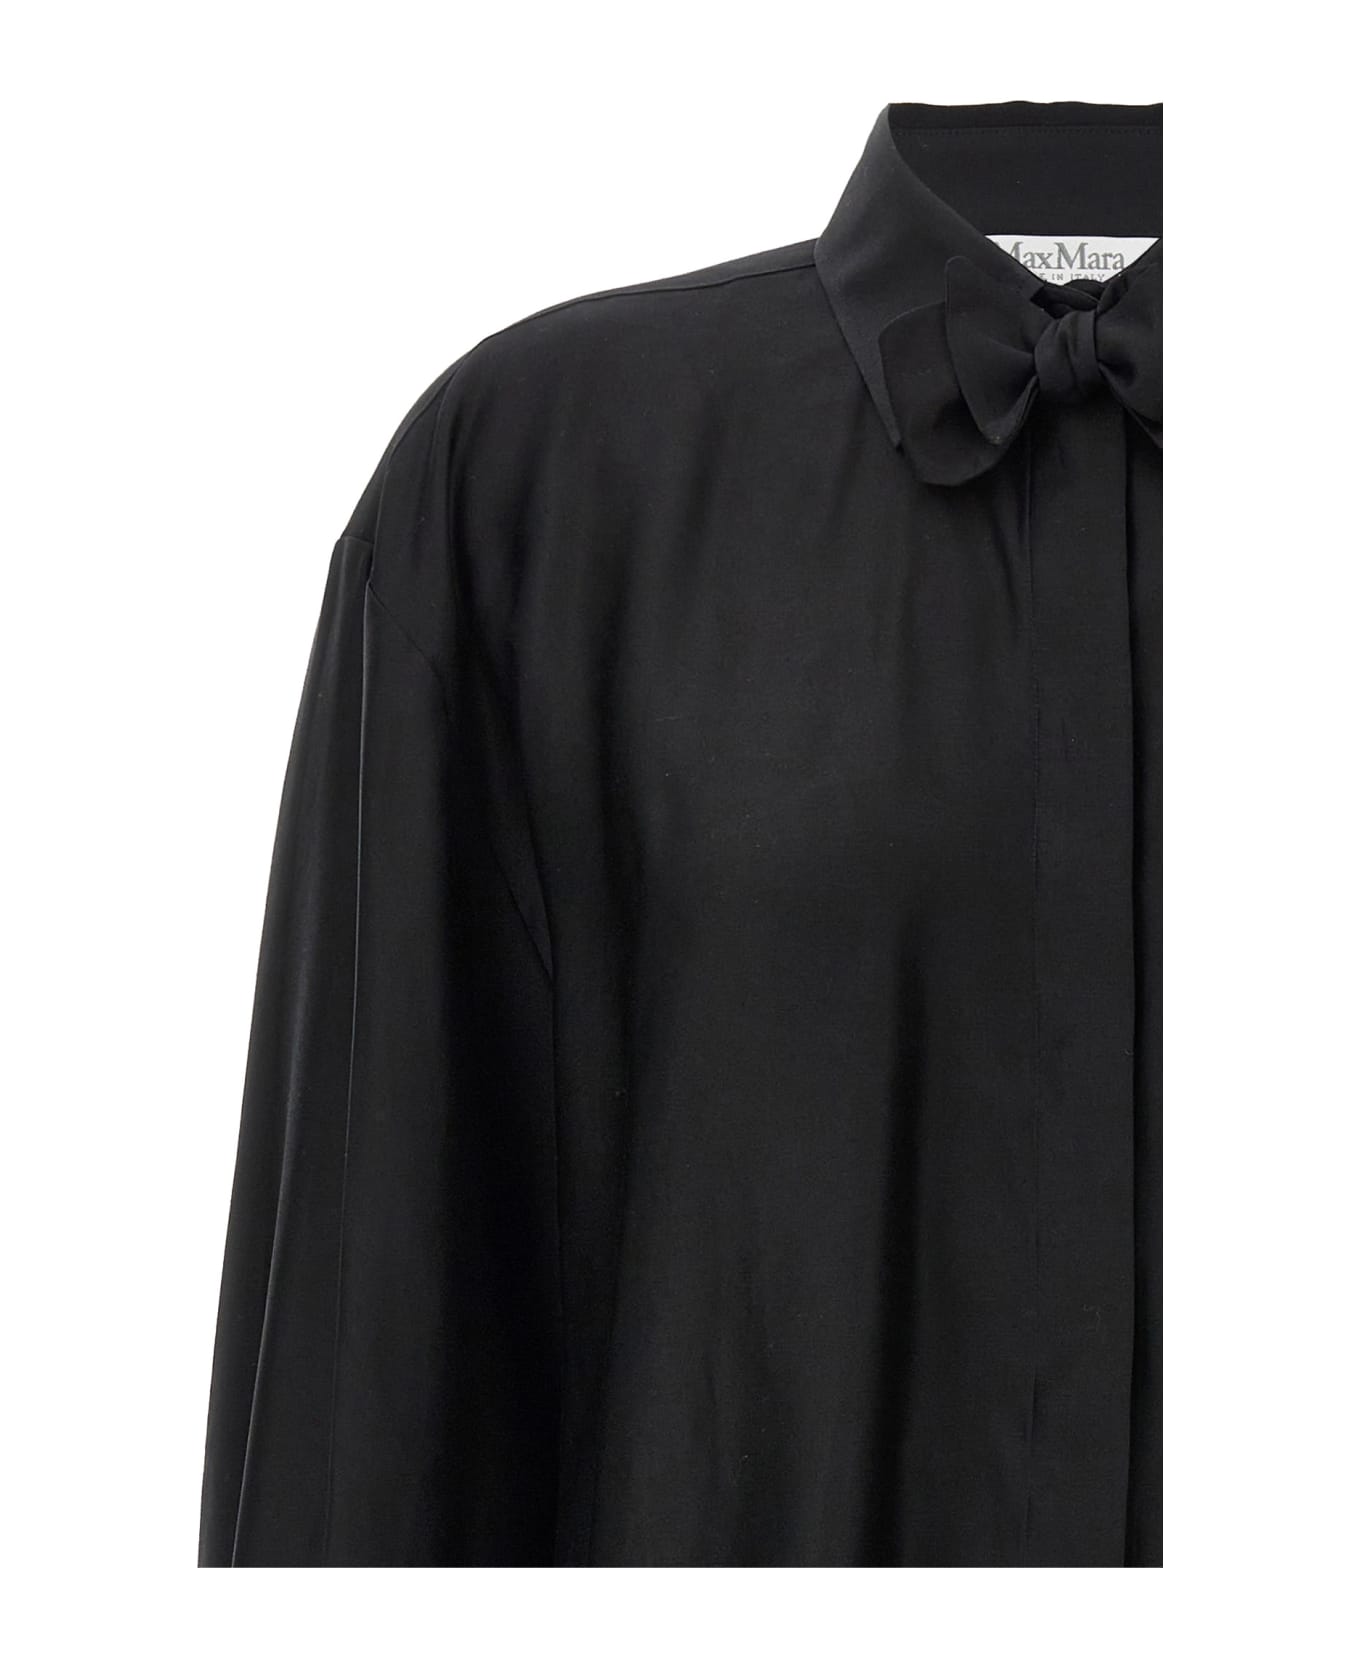 Max Mara 'marea' Shirt - Black   シャツ